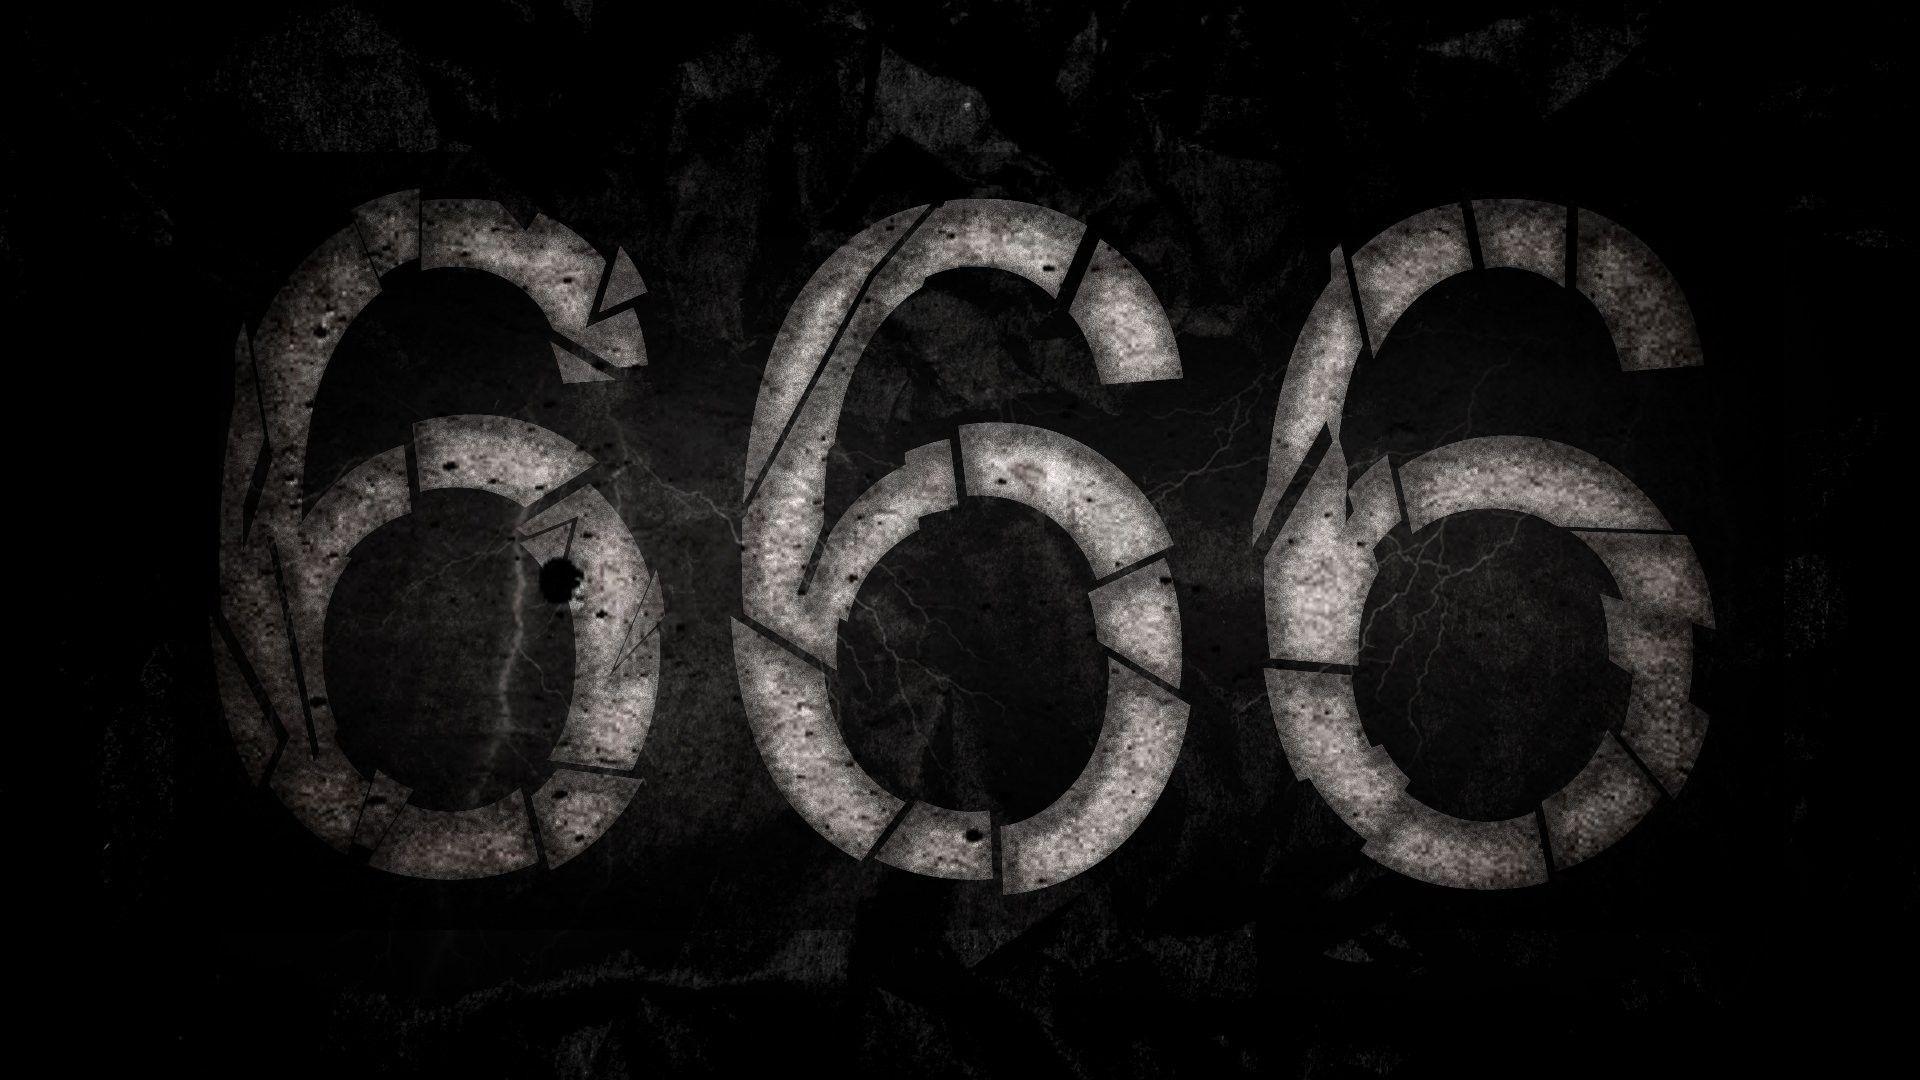 Hình nền 666: Thiêng liêng và sâu sắc, bộ sưu tập hình nền 666 sẽ đưa bạn đến một không gian ma mị và sâu thẳm của tâm hồn. Sự kết hợp của những hình ảnh đẹp và kinh dị sẽ khiến bạn chìm đắm trong thế giới kỳ diệu.